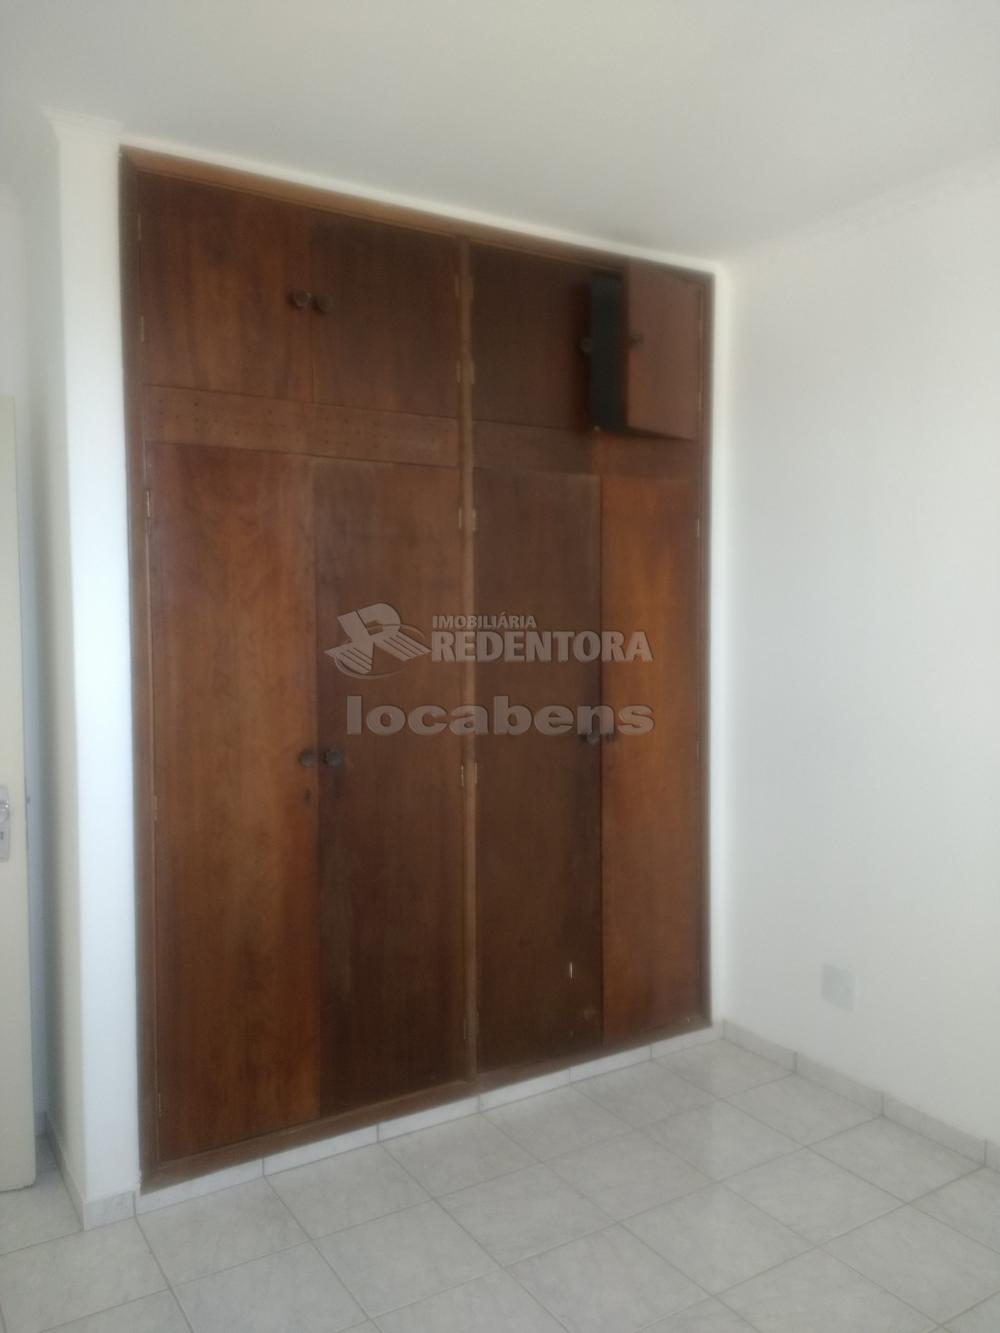 Comprar Apartamento / Padrão em São José do Rio Preto apenas R$ 200.000,00 - Foto 7